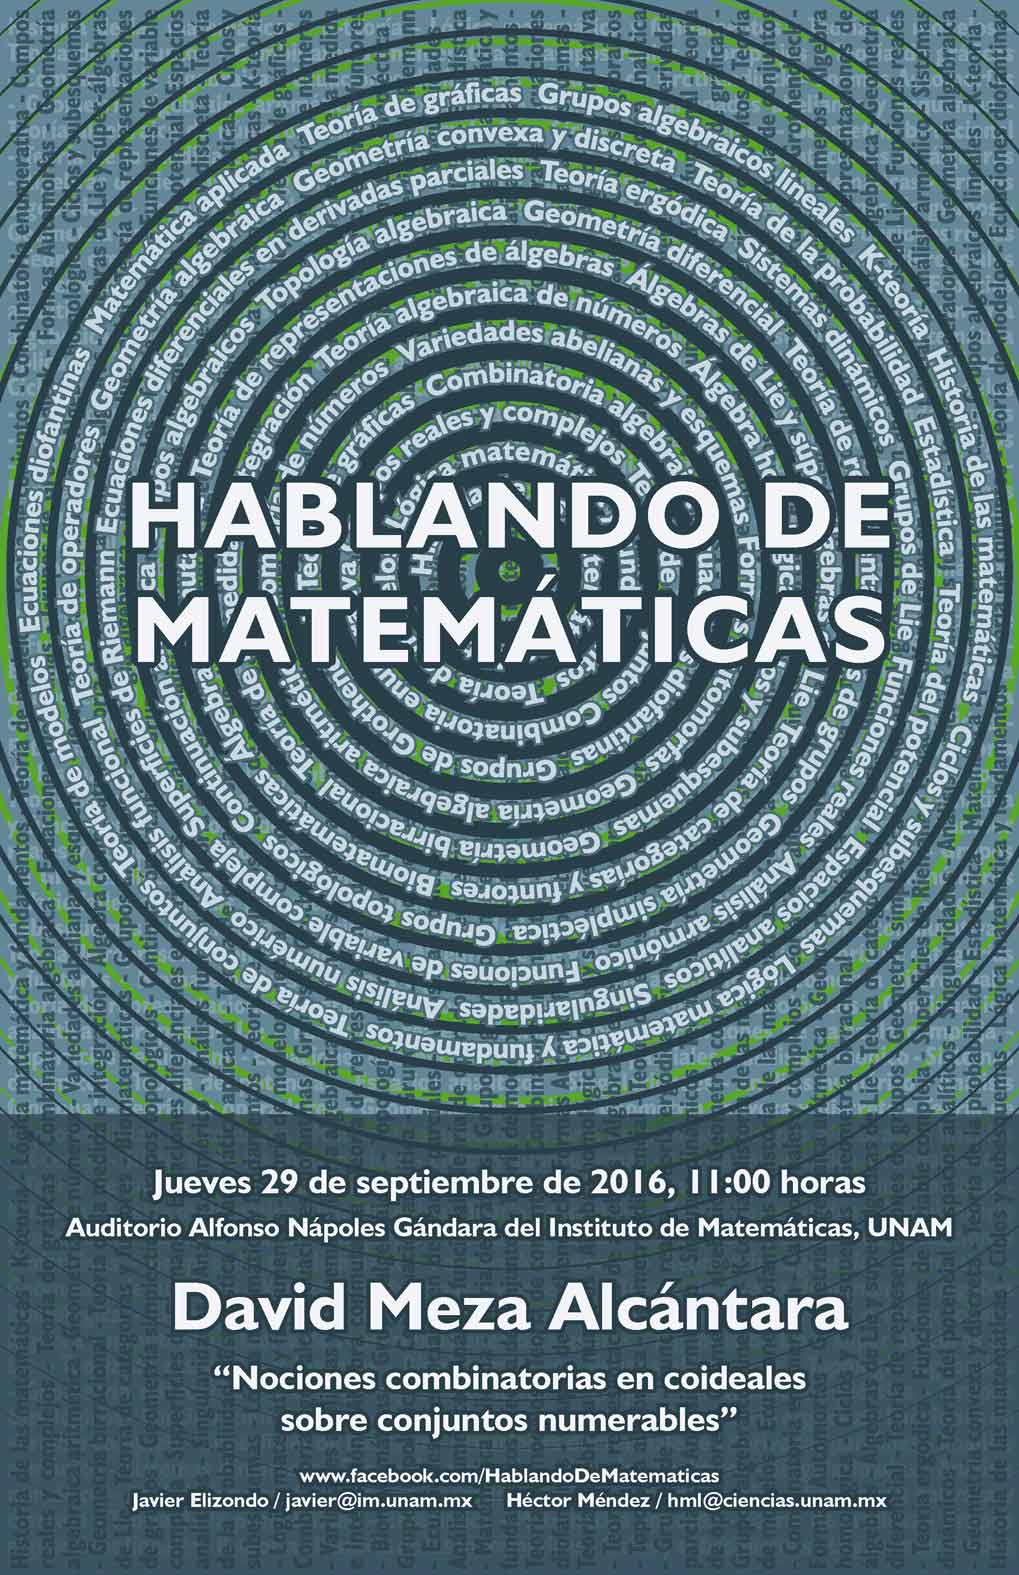 HABLANDO DE MATEMÁTICAS: David Meza Alcántara, Facultad de Ciencias, UNAM